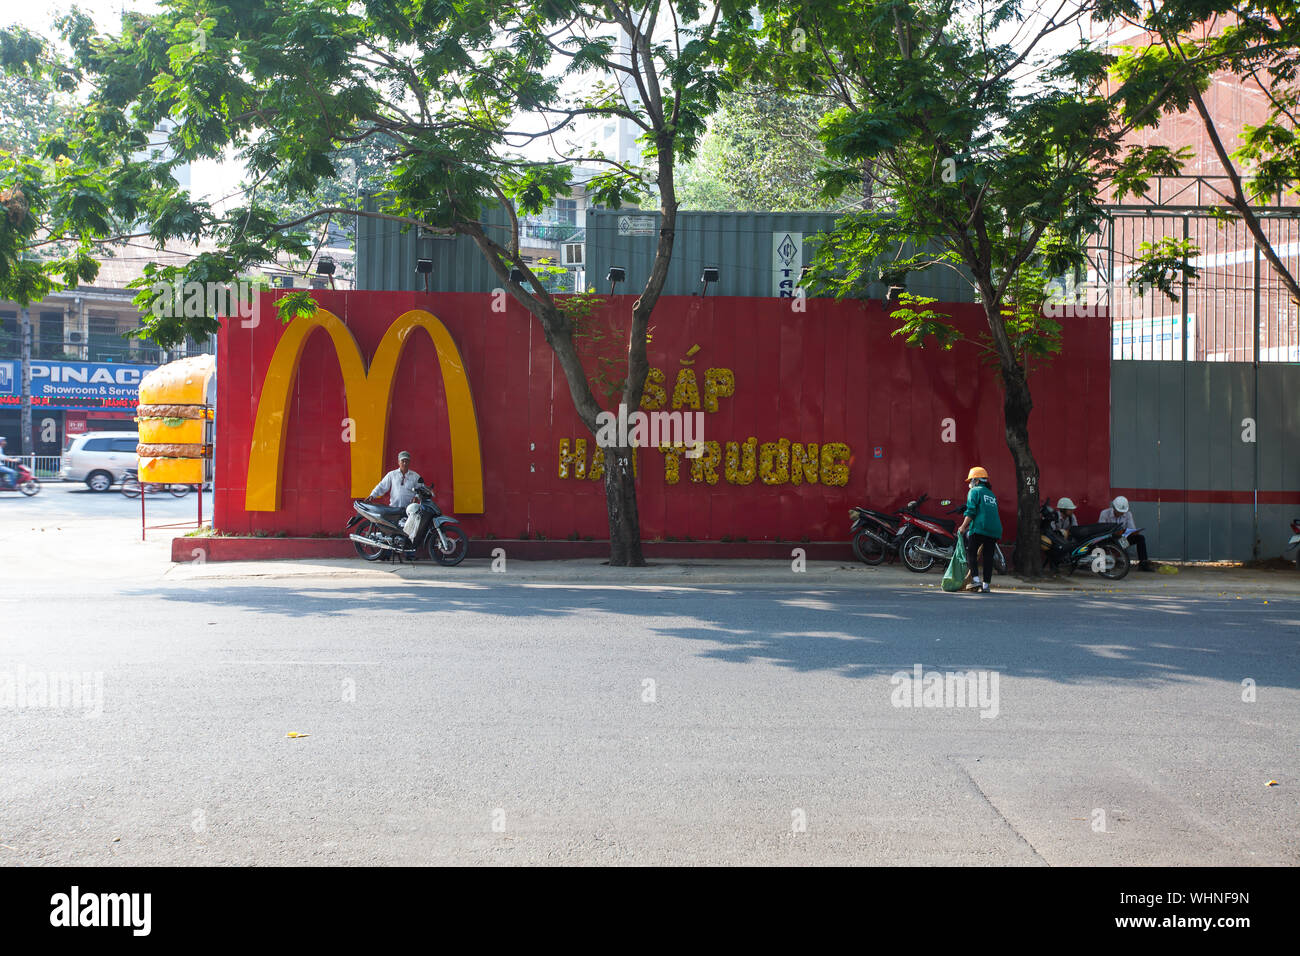 Pubblicità del nuovo ristorante MacDonald in Vietnam. McDonald's Vietnam ha aperto il suo primo ristorante a ho chi Minh City nel febbraio 2014. Foto Stock